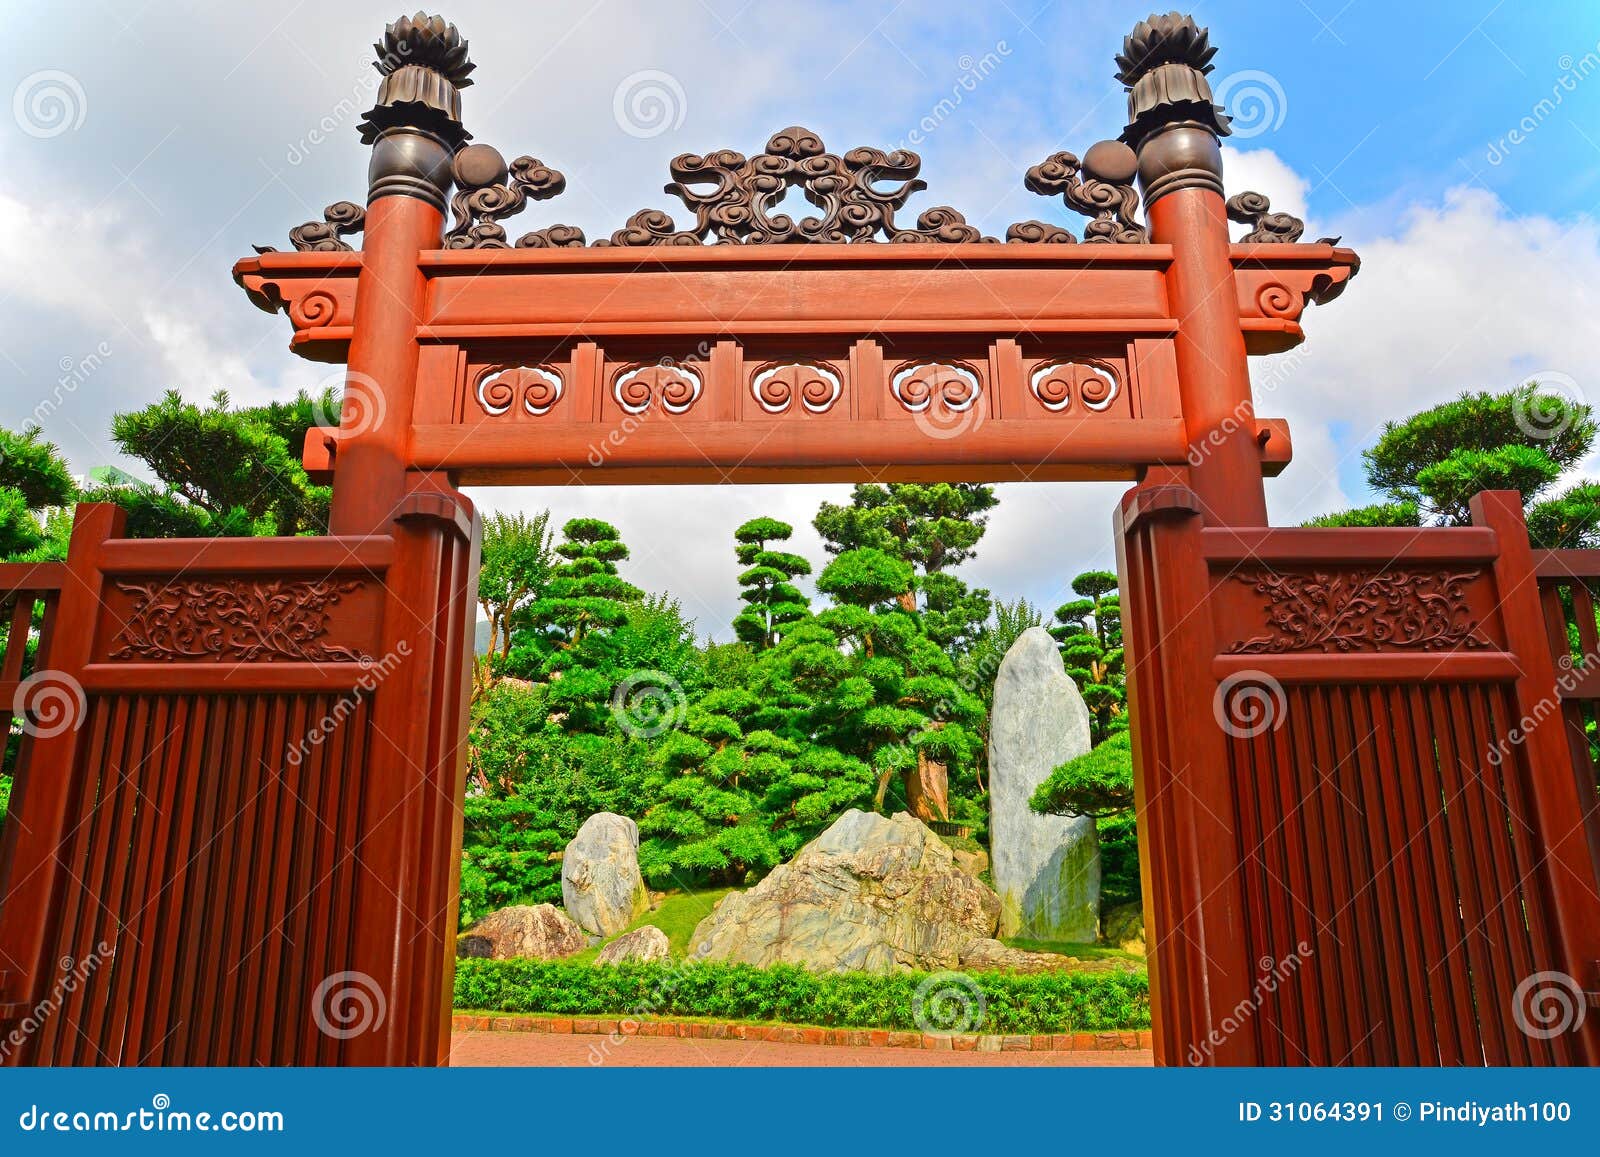 zen garden entrance